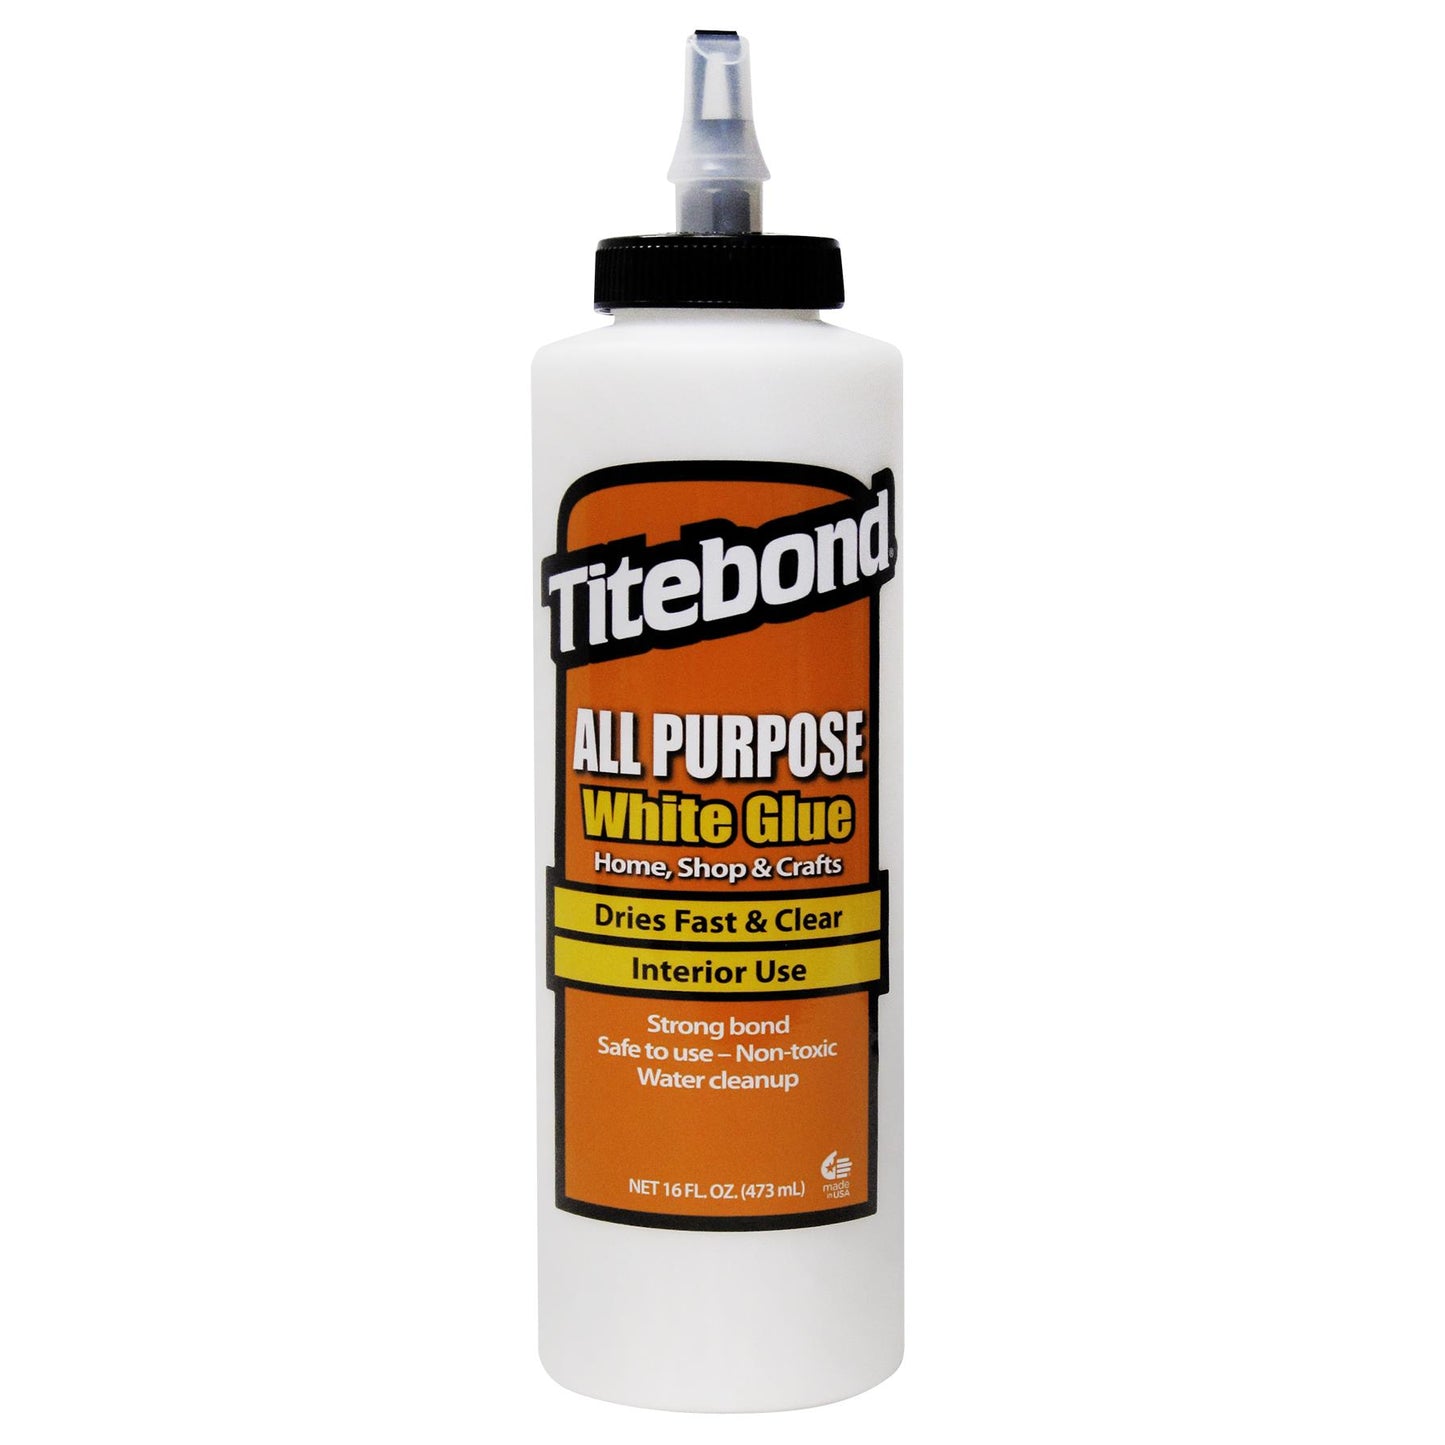 Titebond 5034 All Purpose White Glue (16 fl oz) 473ml